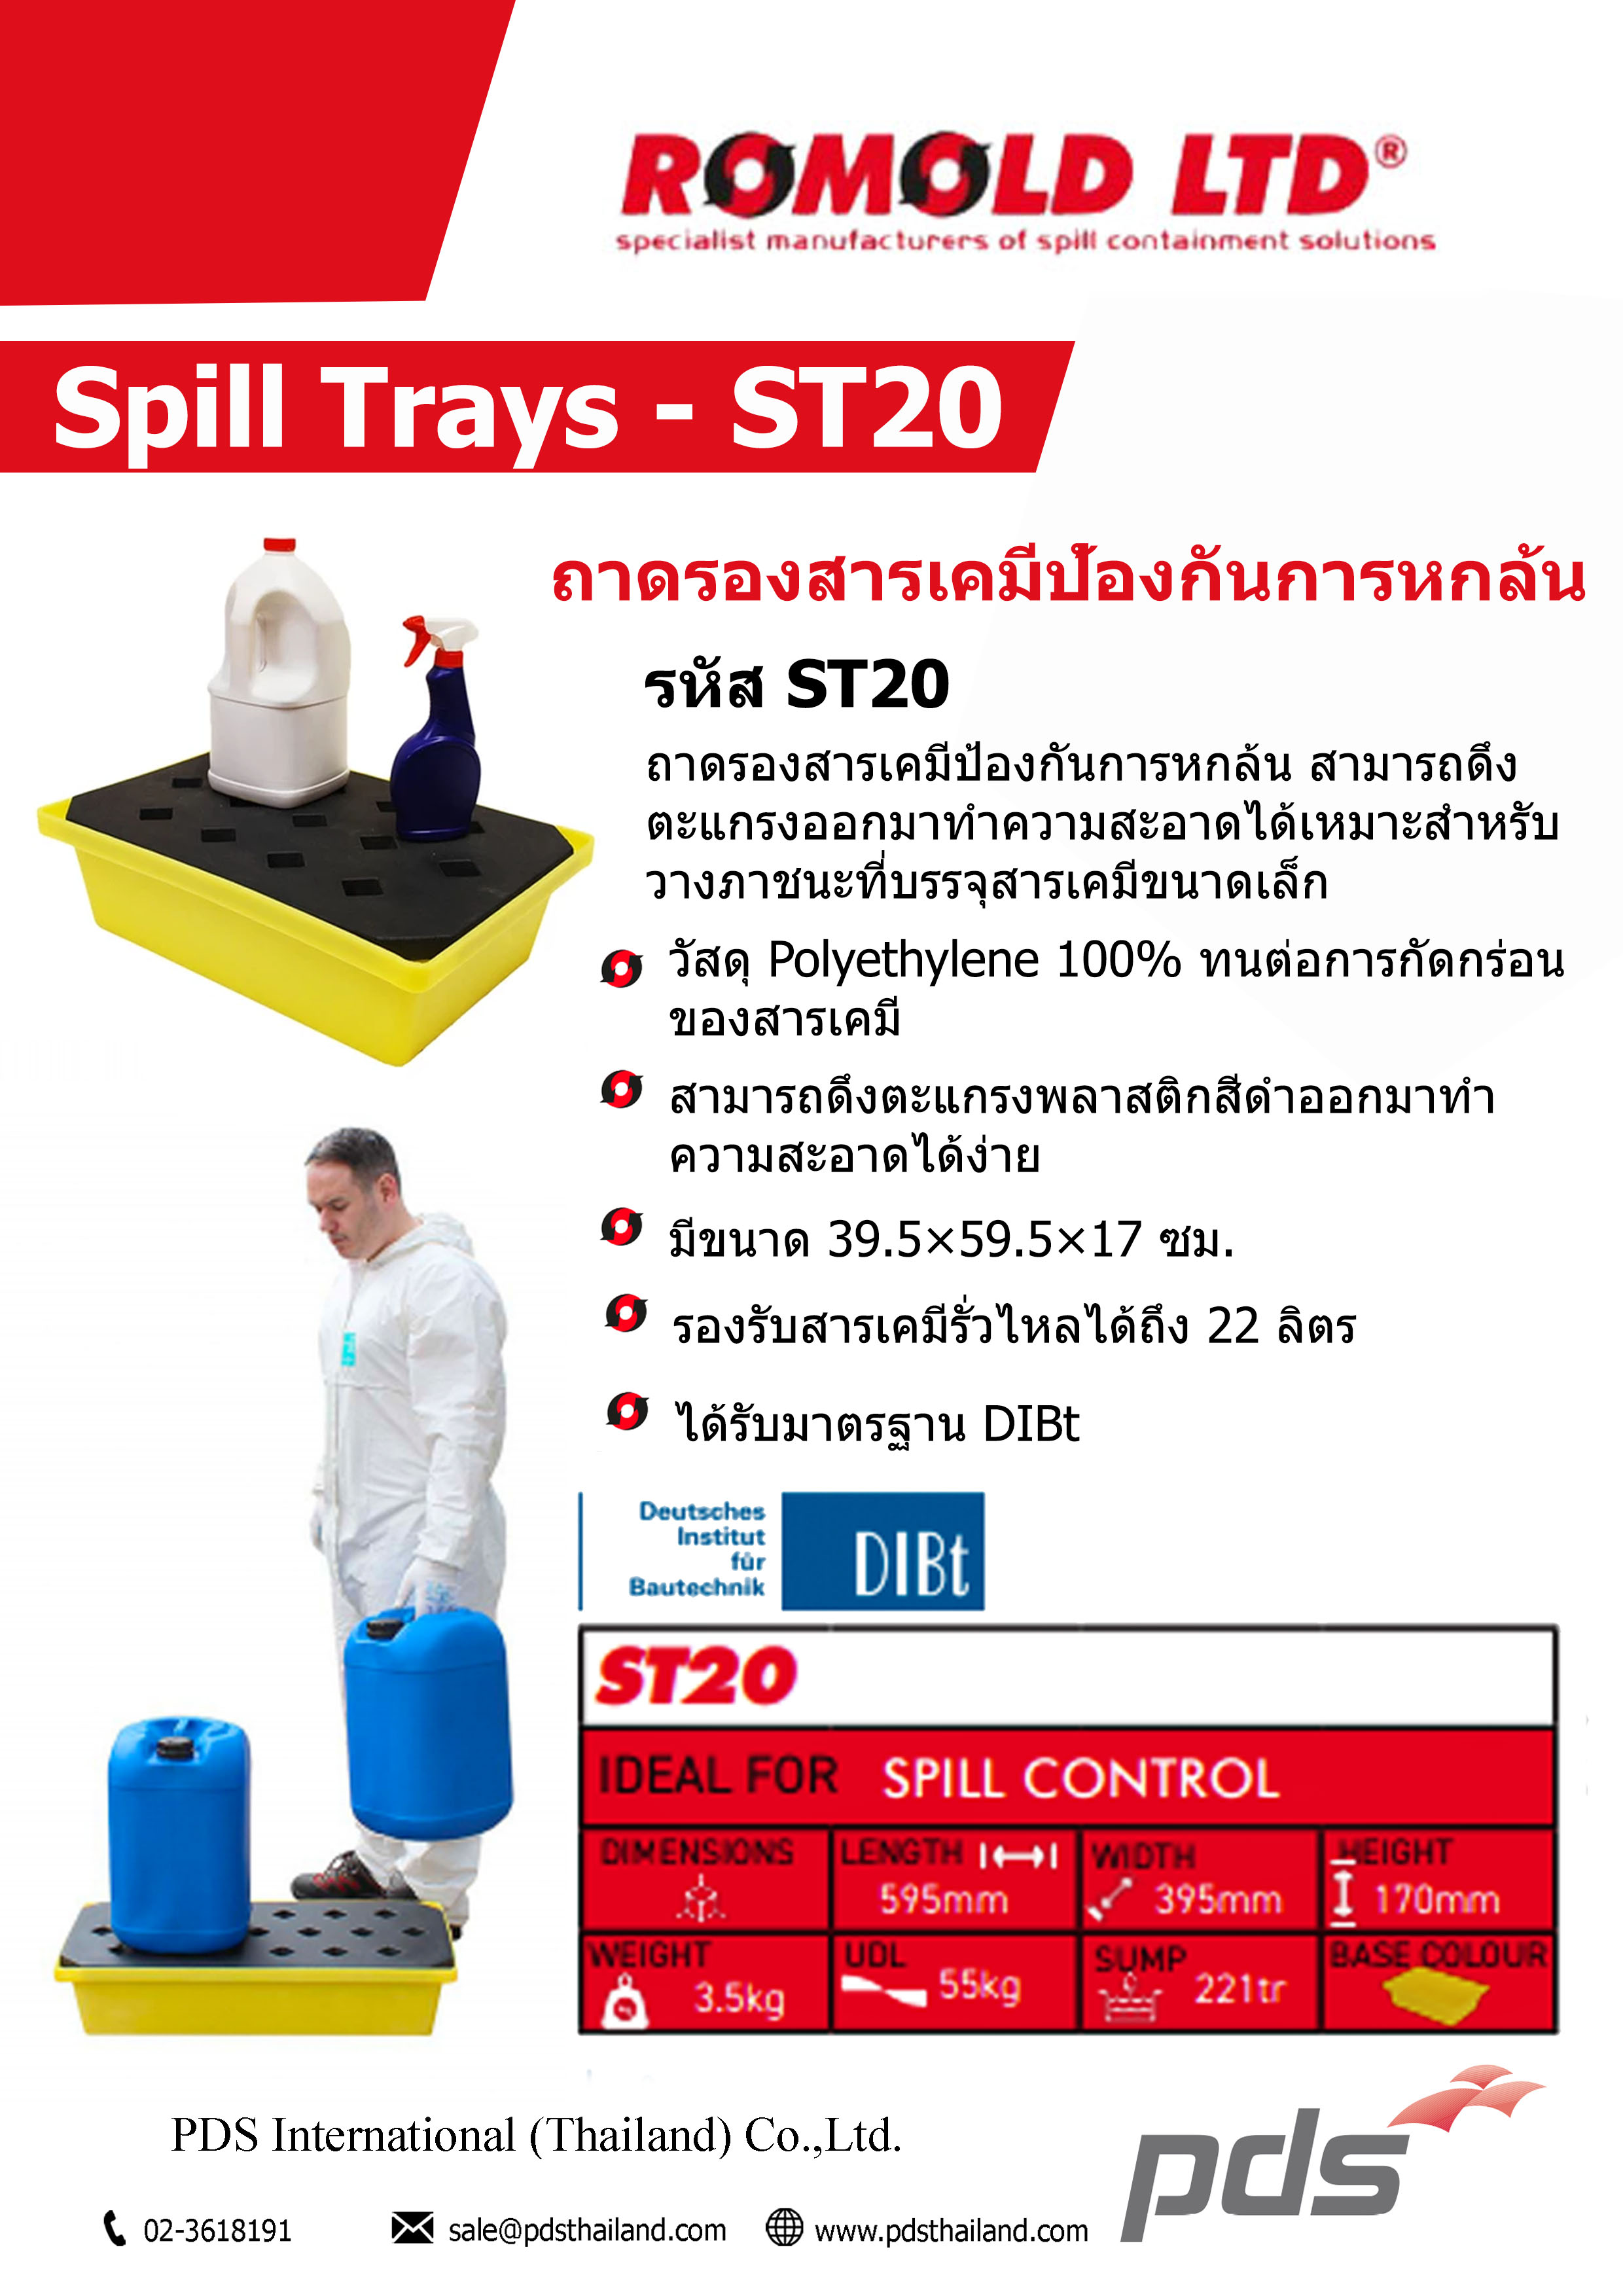 ถาดรองสารเคมีป้องกันการหกล้น รหัส ST20